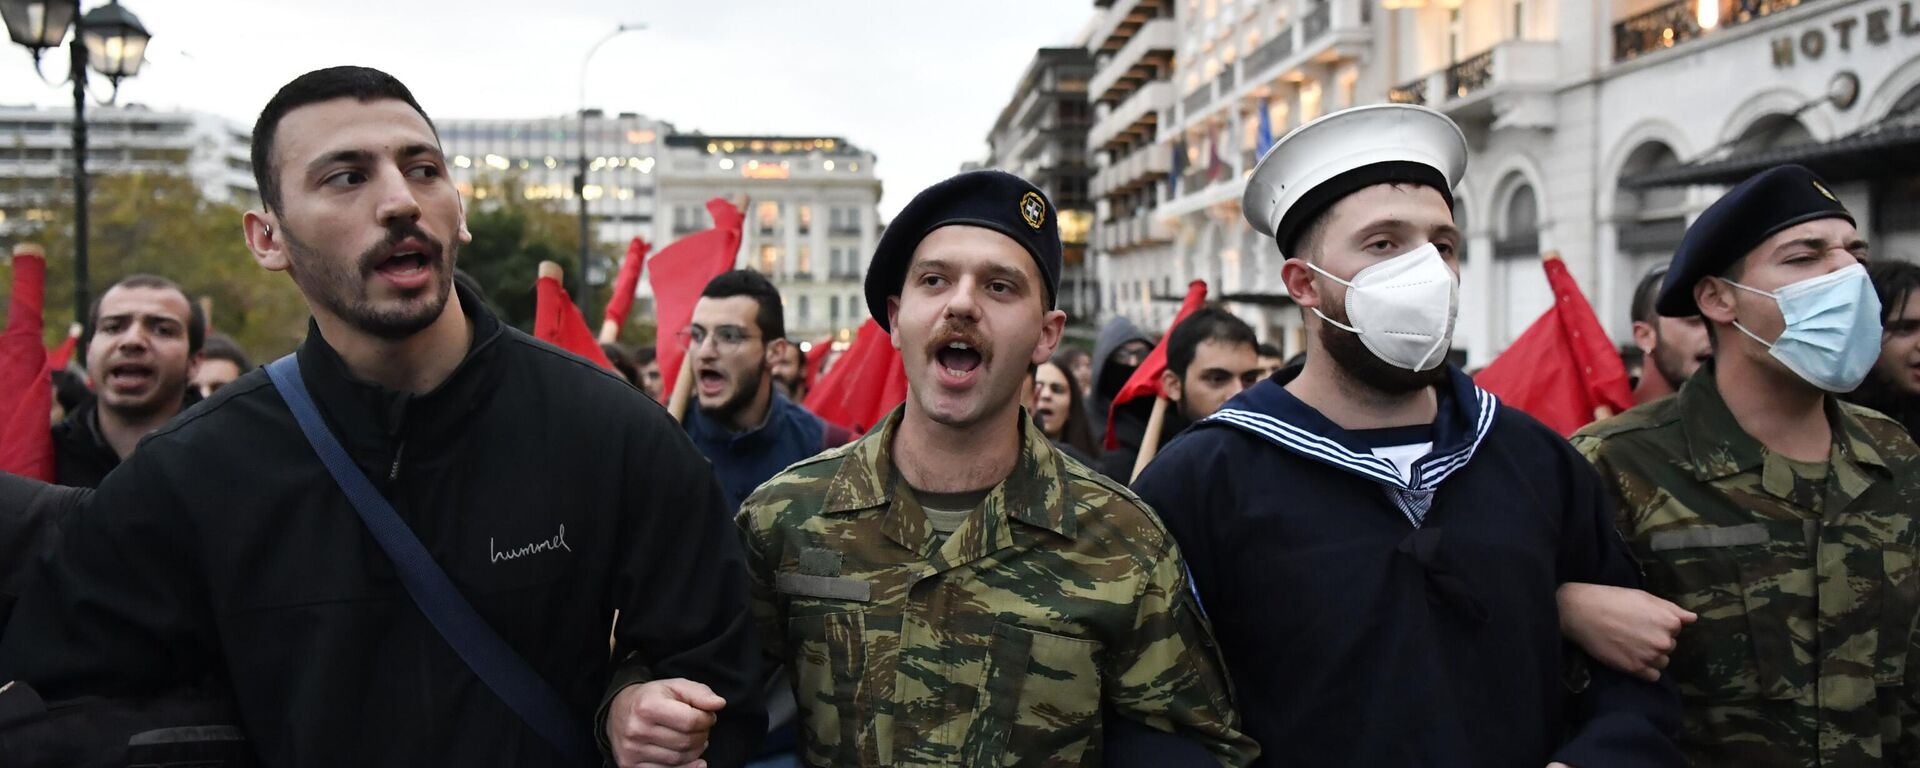 Estudiantes griegos protestan en el aniversario de la masacre de la Politécnica, 17 de noviembre de 2022 - Sputnik Mundo, 1920, 17.11.2022